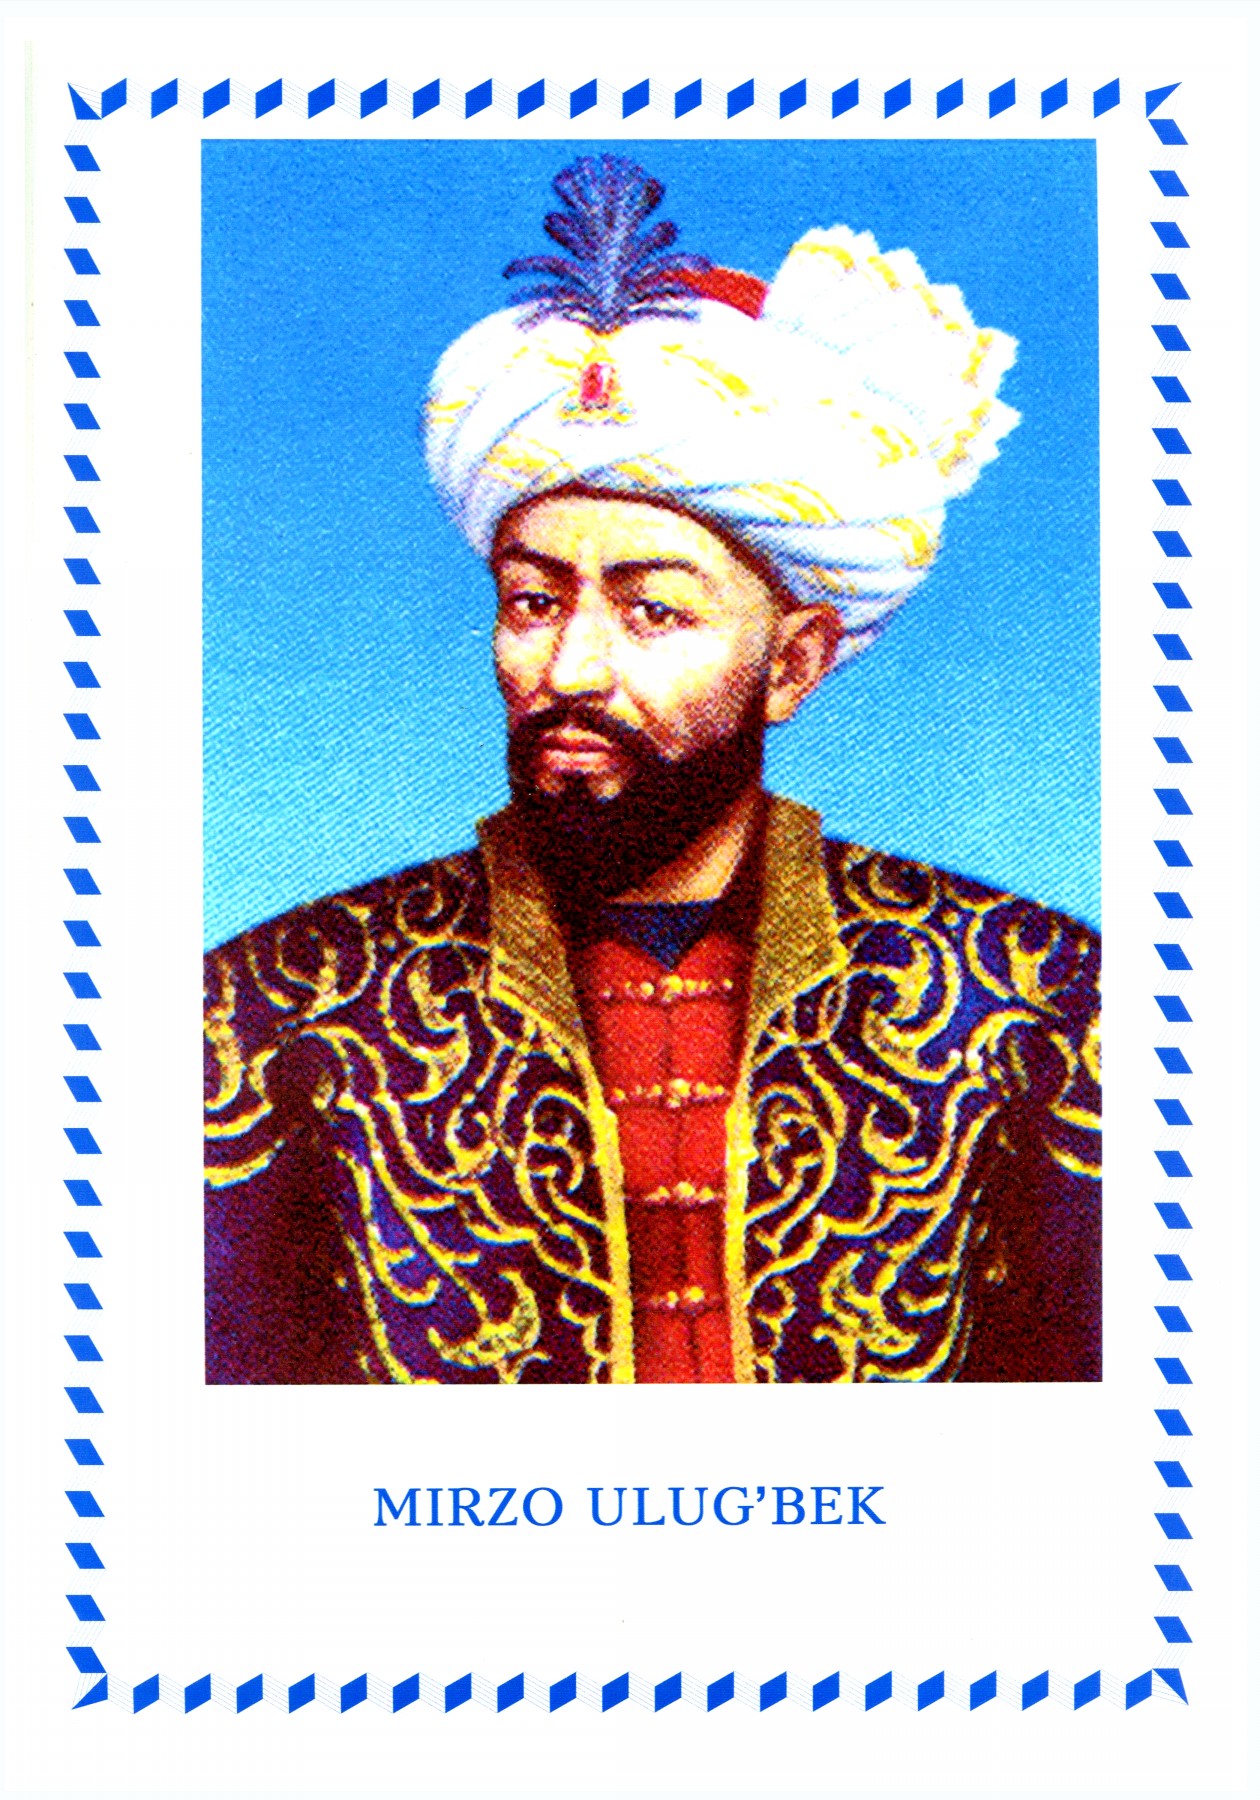 Mirzo Ulug'bek - Мирзо Улуғбек (1394-1449)